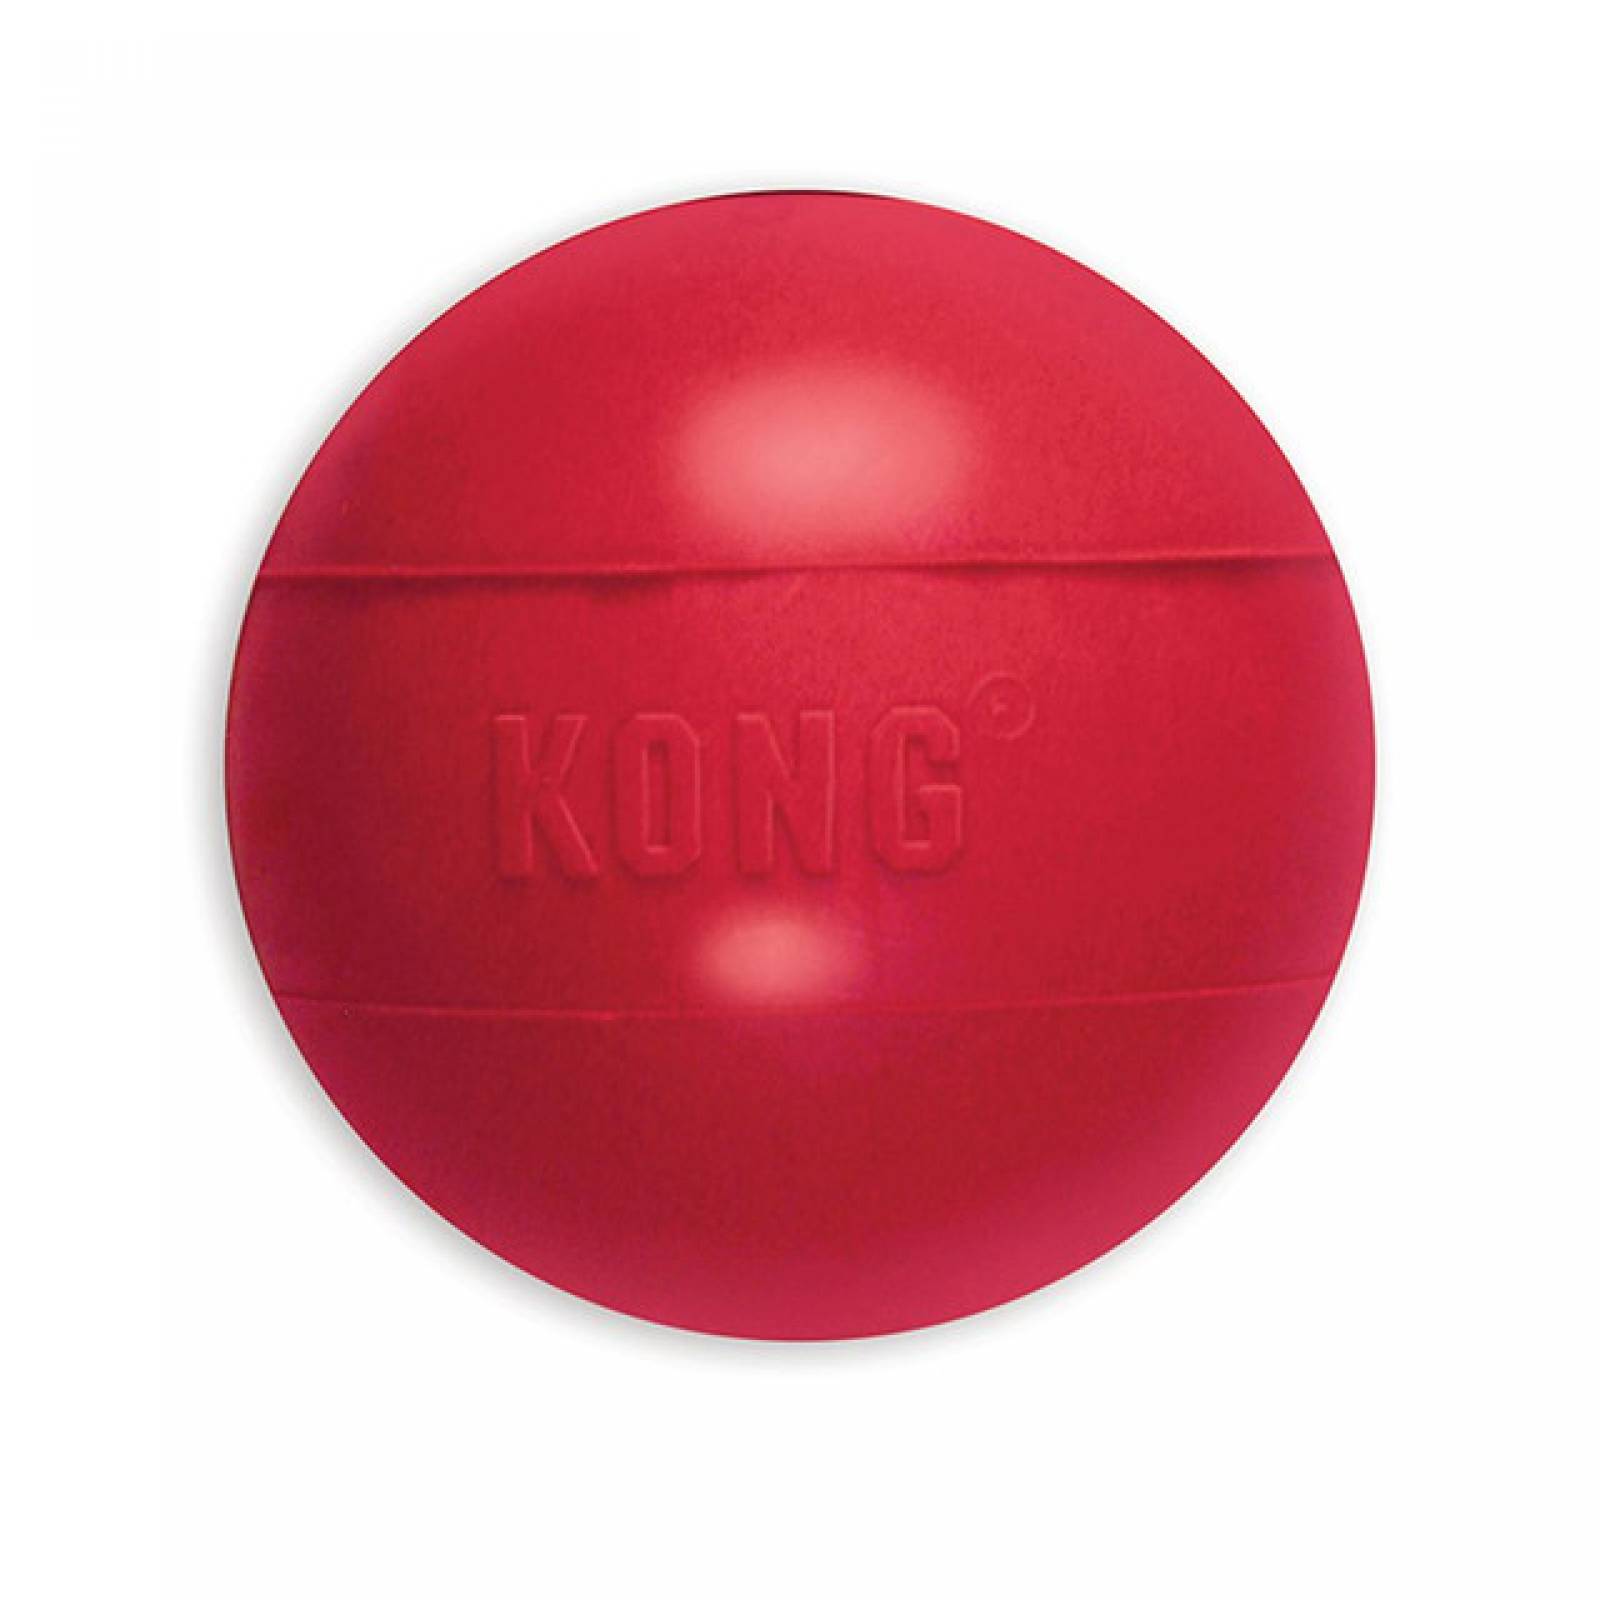 Kong Ball juguete para perro Pelota con hoyo para esconder premios Gde rojo